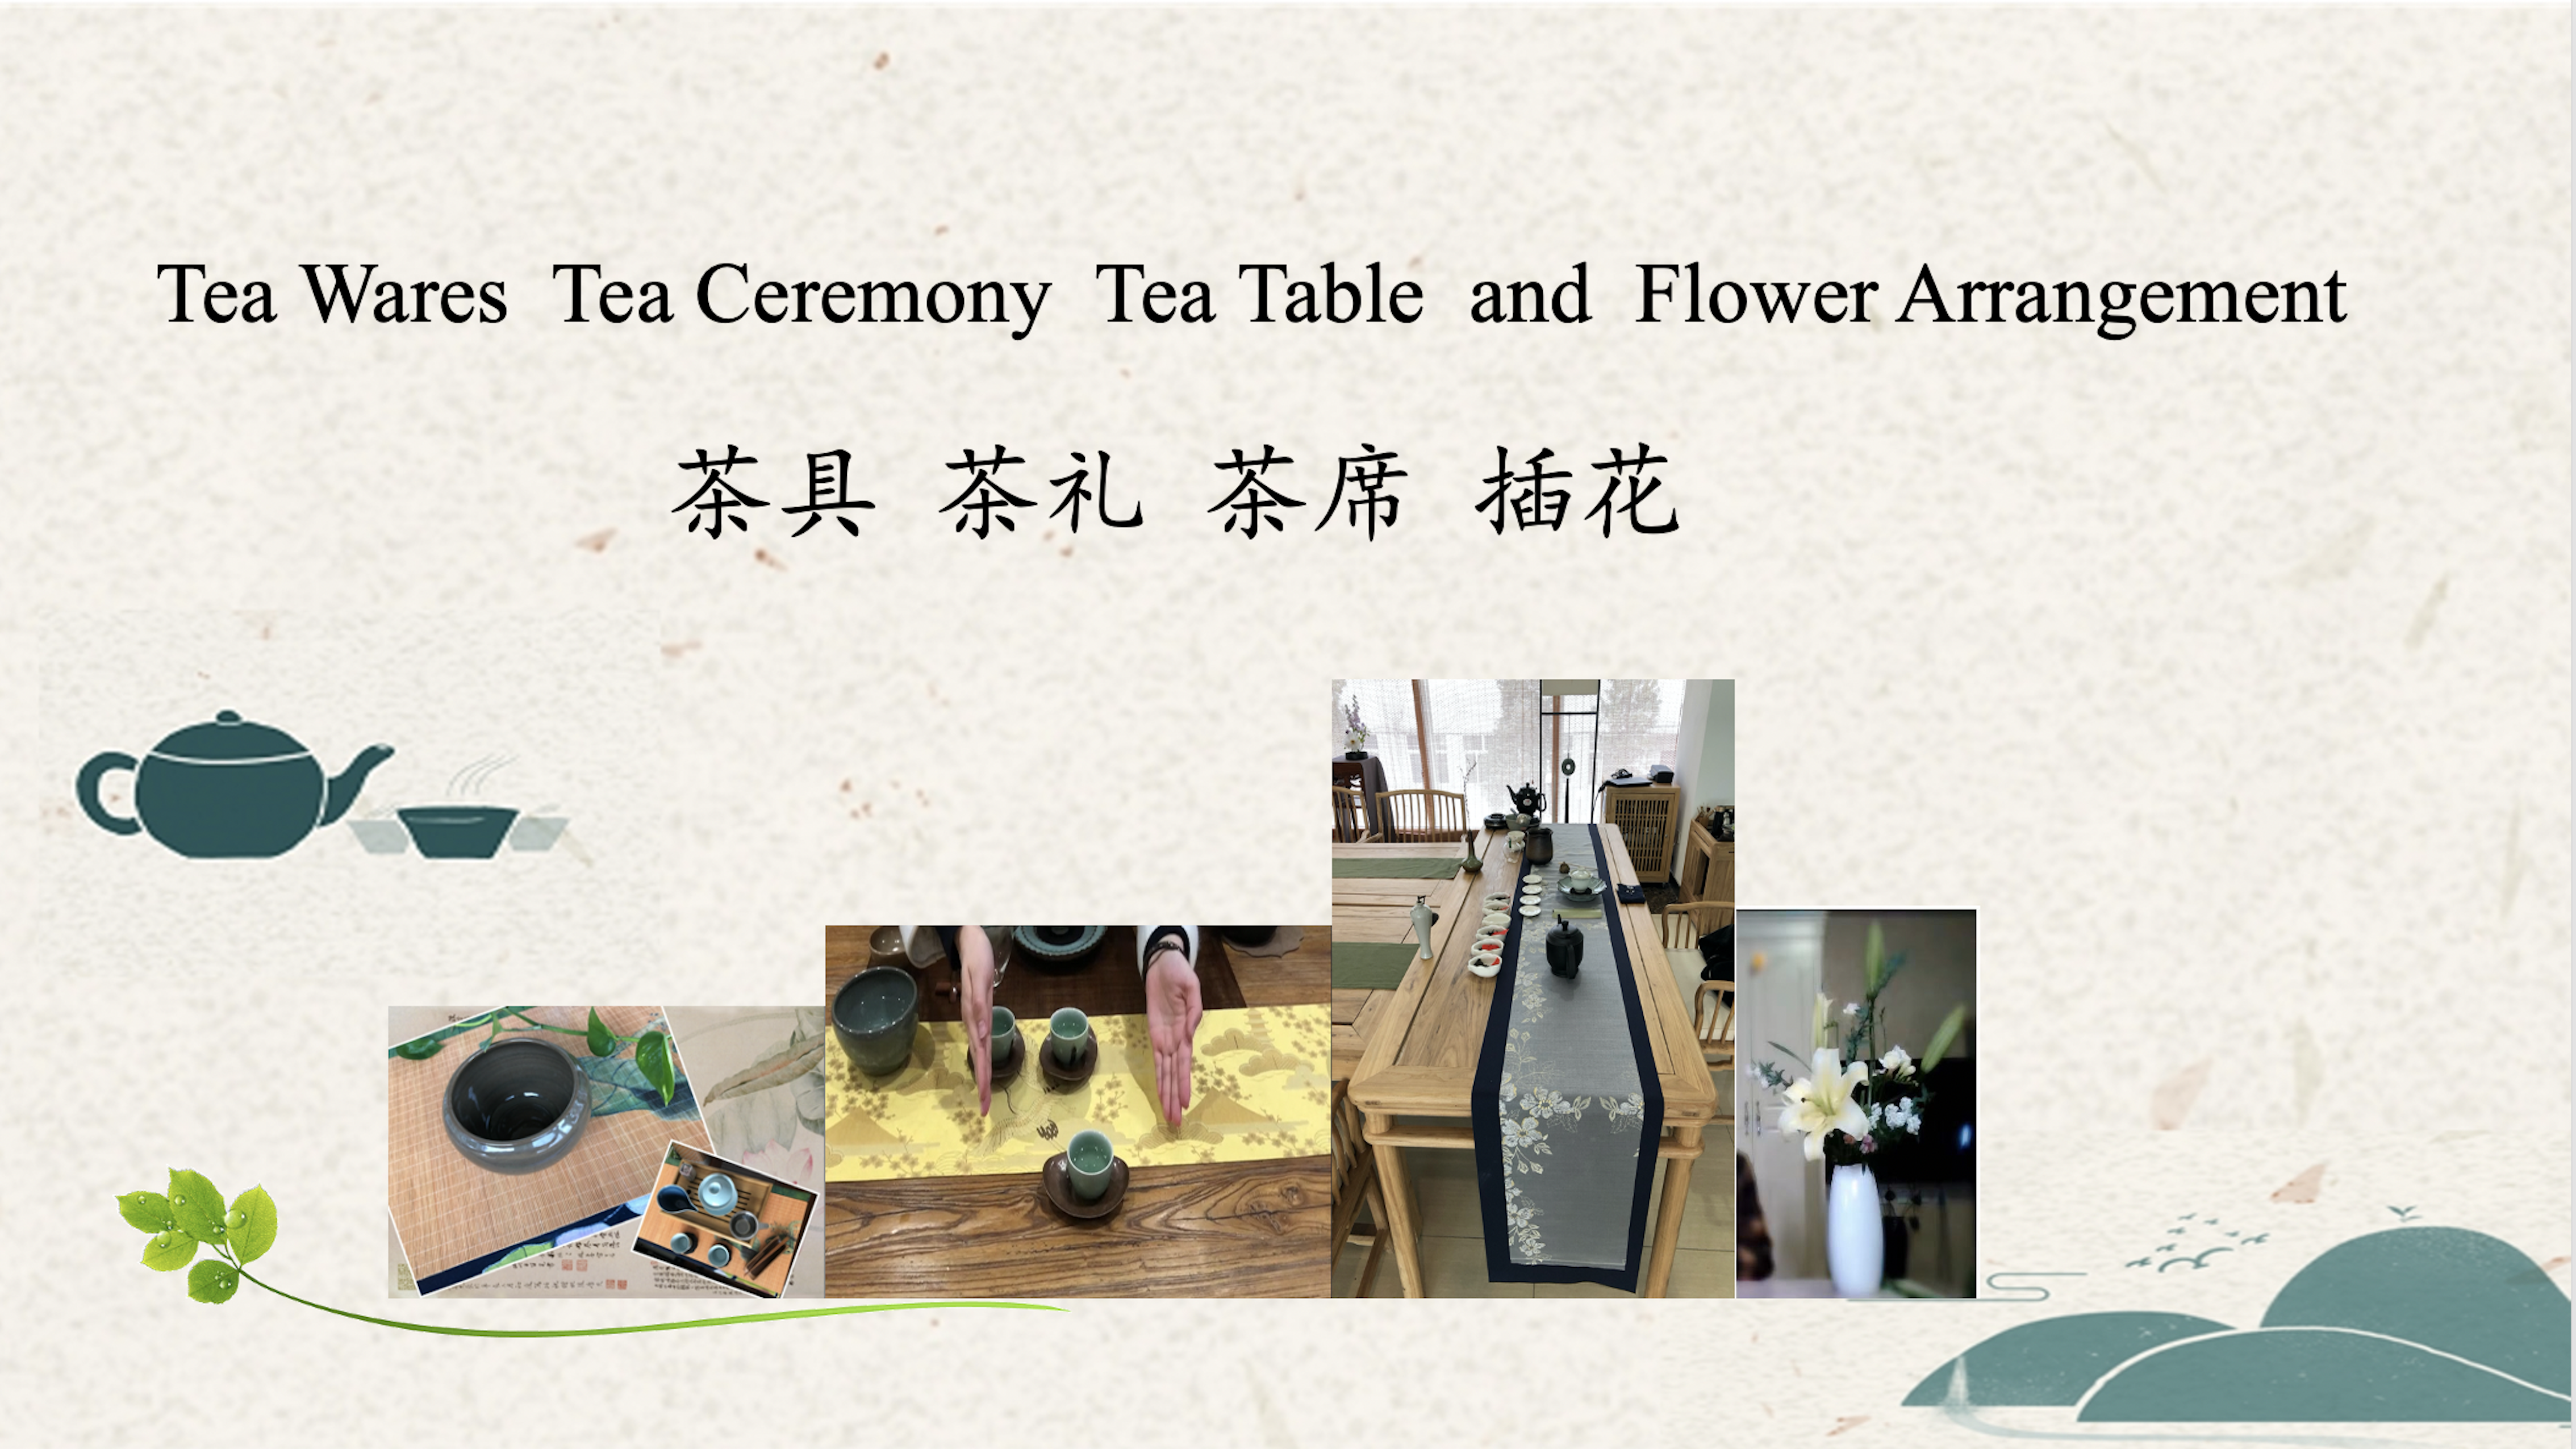 Tea Wares, Tea Ceremony, Tea Table, Flower Arrangement